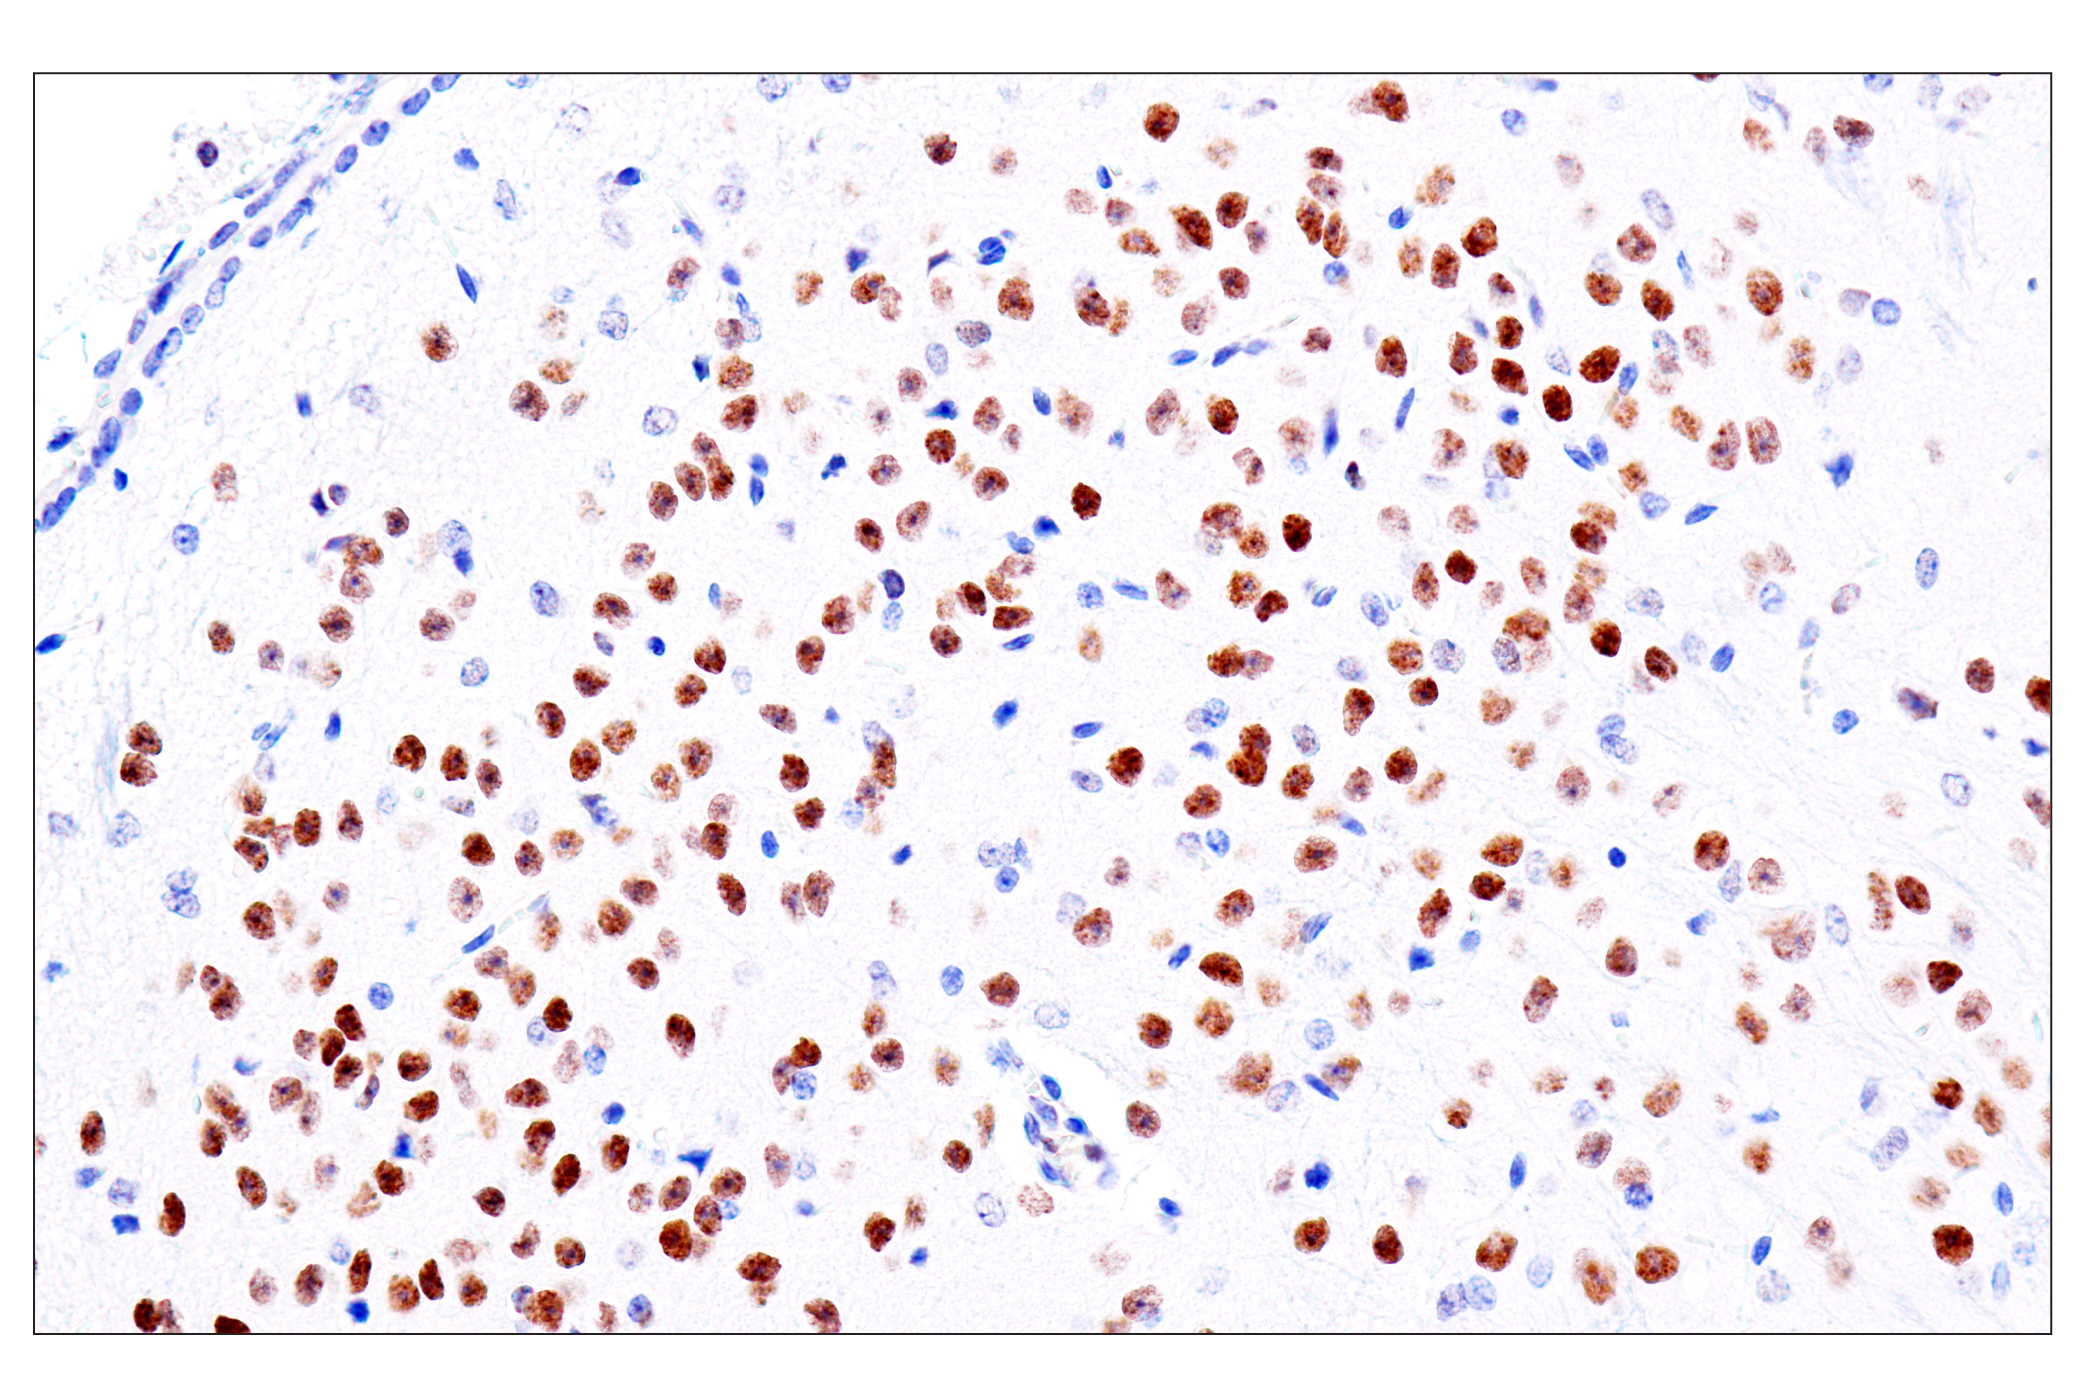  Image 62: GATA Transcription Factor Antibody Sampler Kit